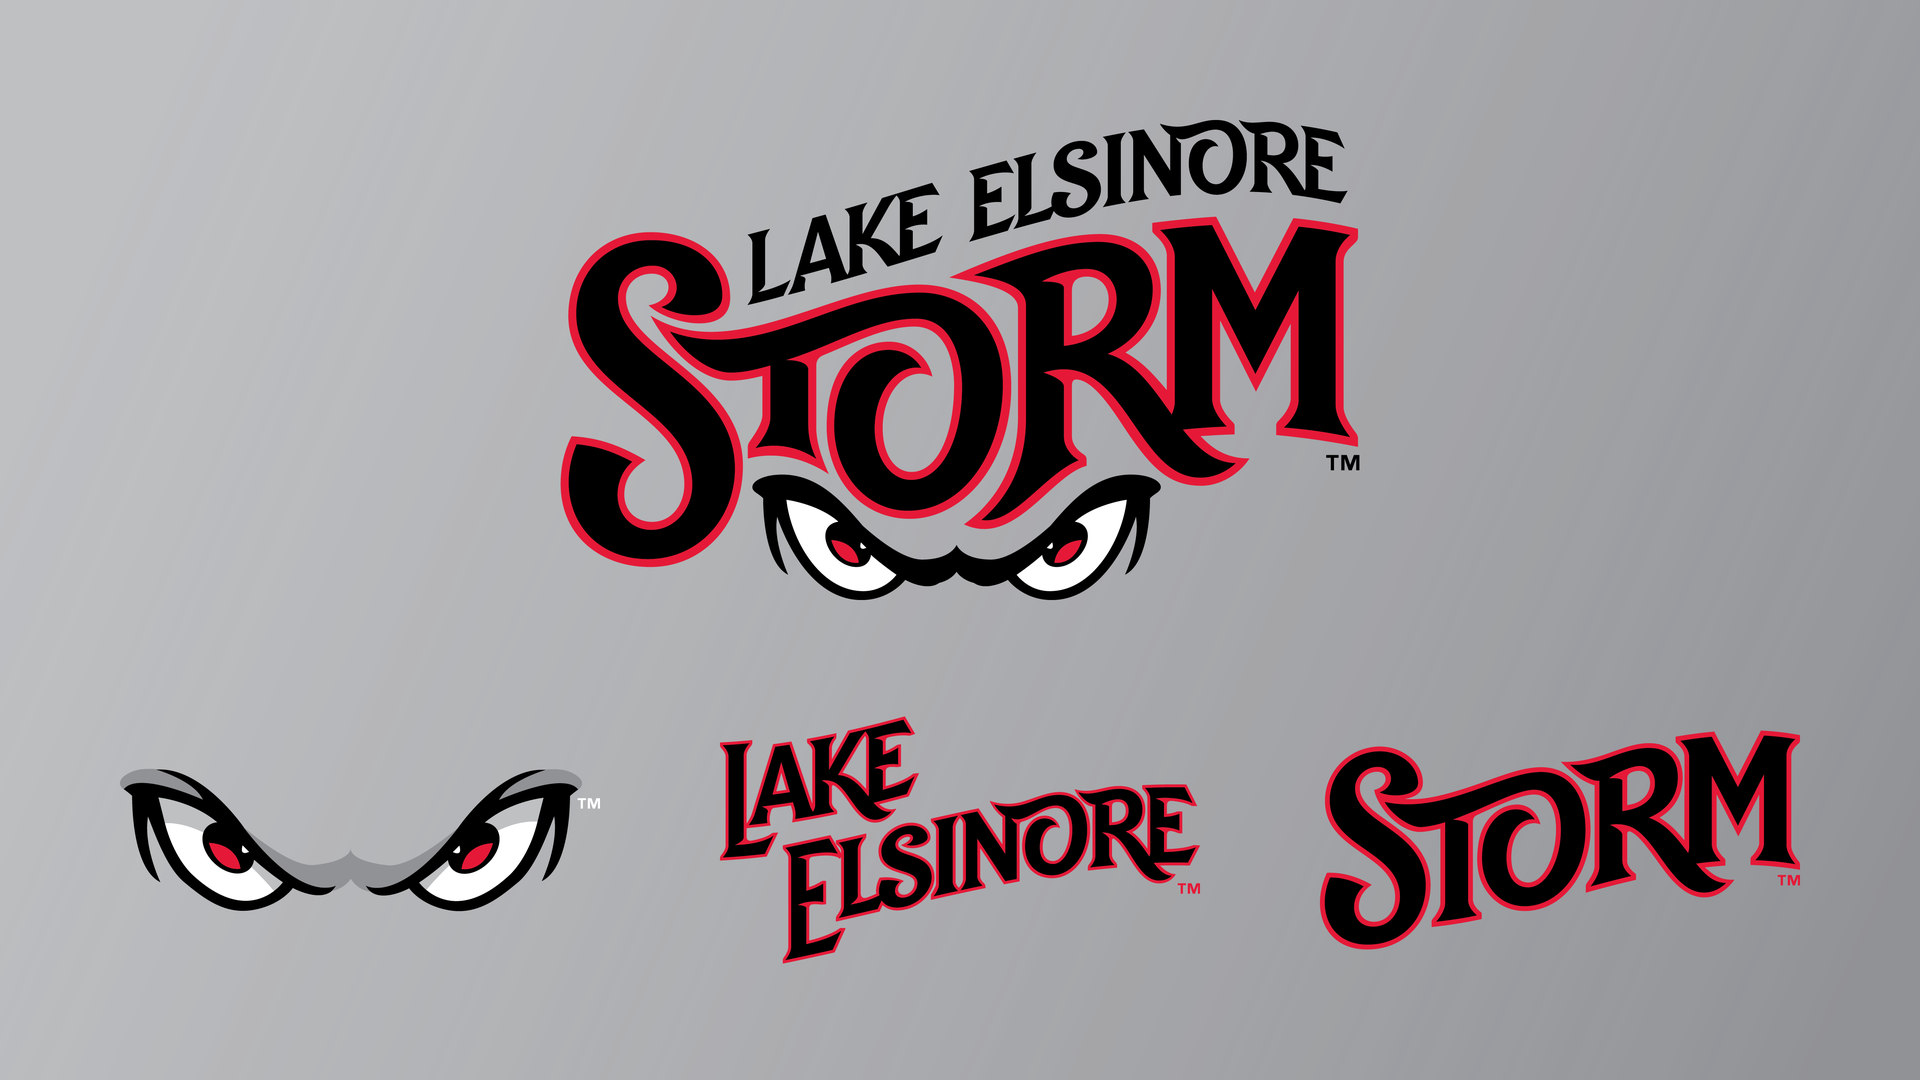 Lake Elsinore storm logo